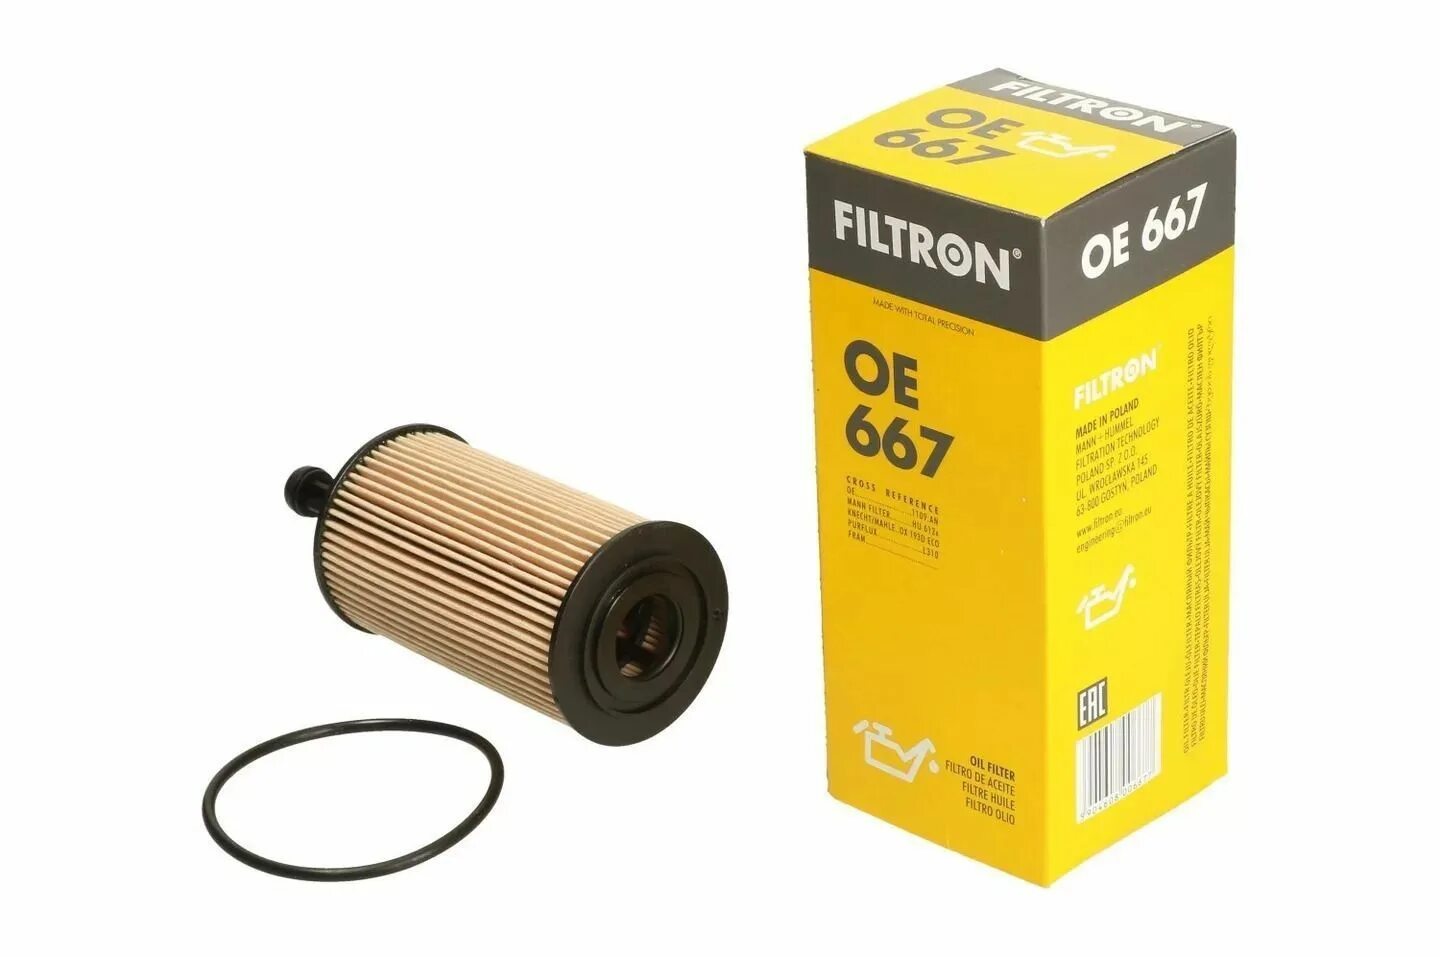 Фильтр масляный пежо 206. Фильтр масляный FILTRON OE 667. Oe667 фильтр масляный Peugeot FILTRON. Фильтр масляный FILTRON oe673. Масляный фильтр Пежо 206 1.4.